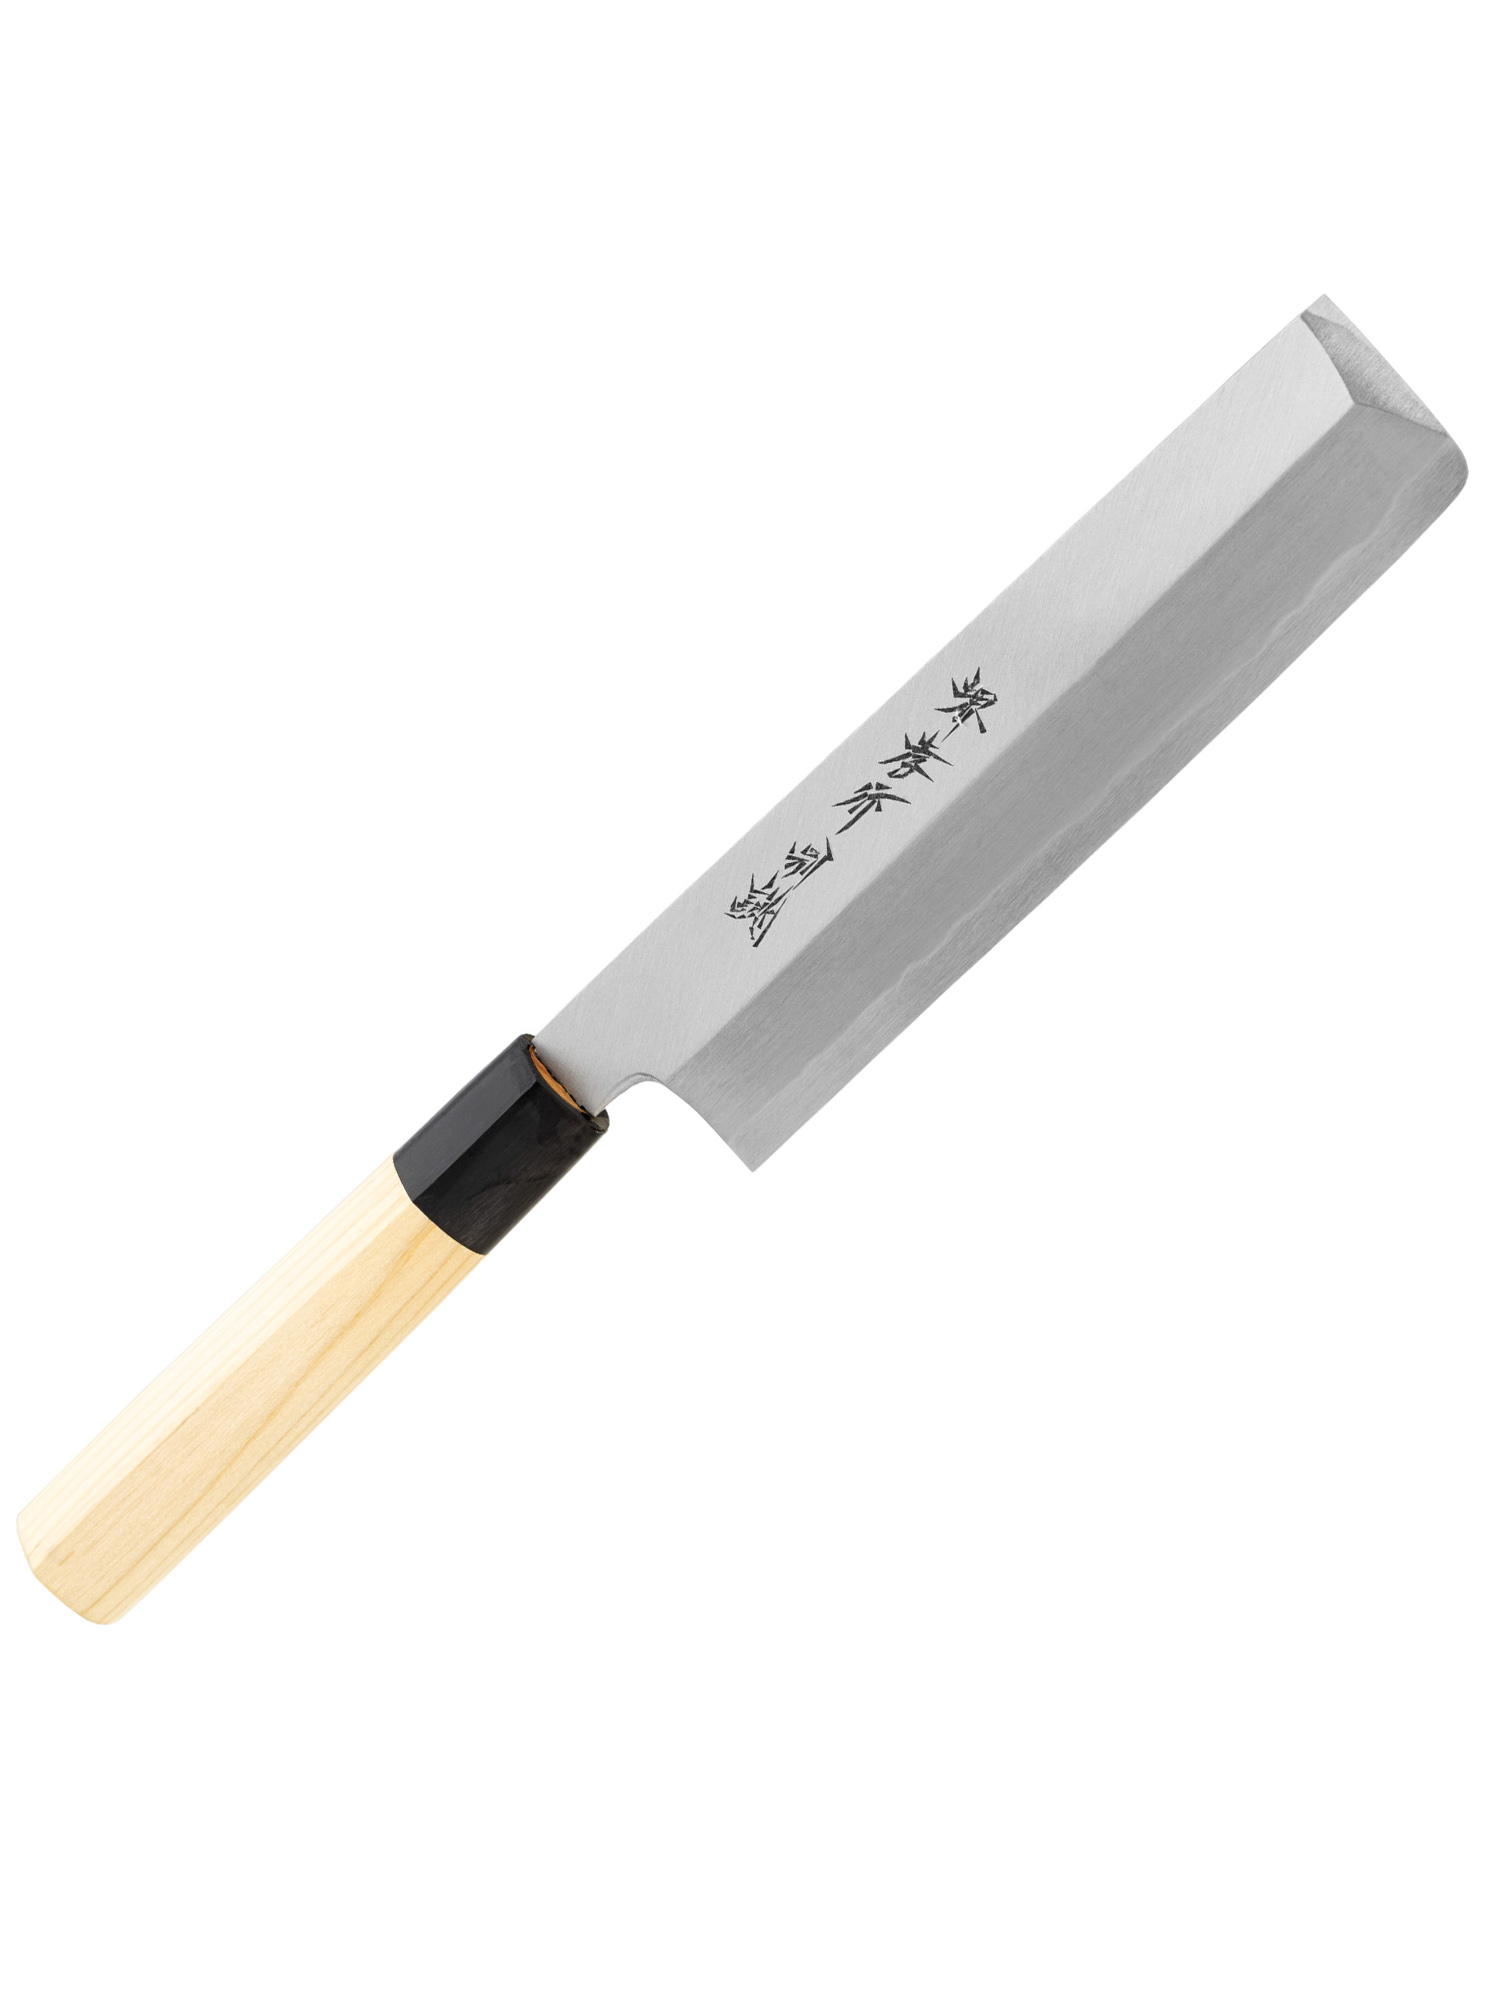 Sakai Takayuki deba single bevel Tokojou White Steel japanese kitchen knife usuba 180mm